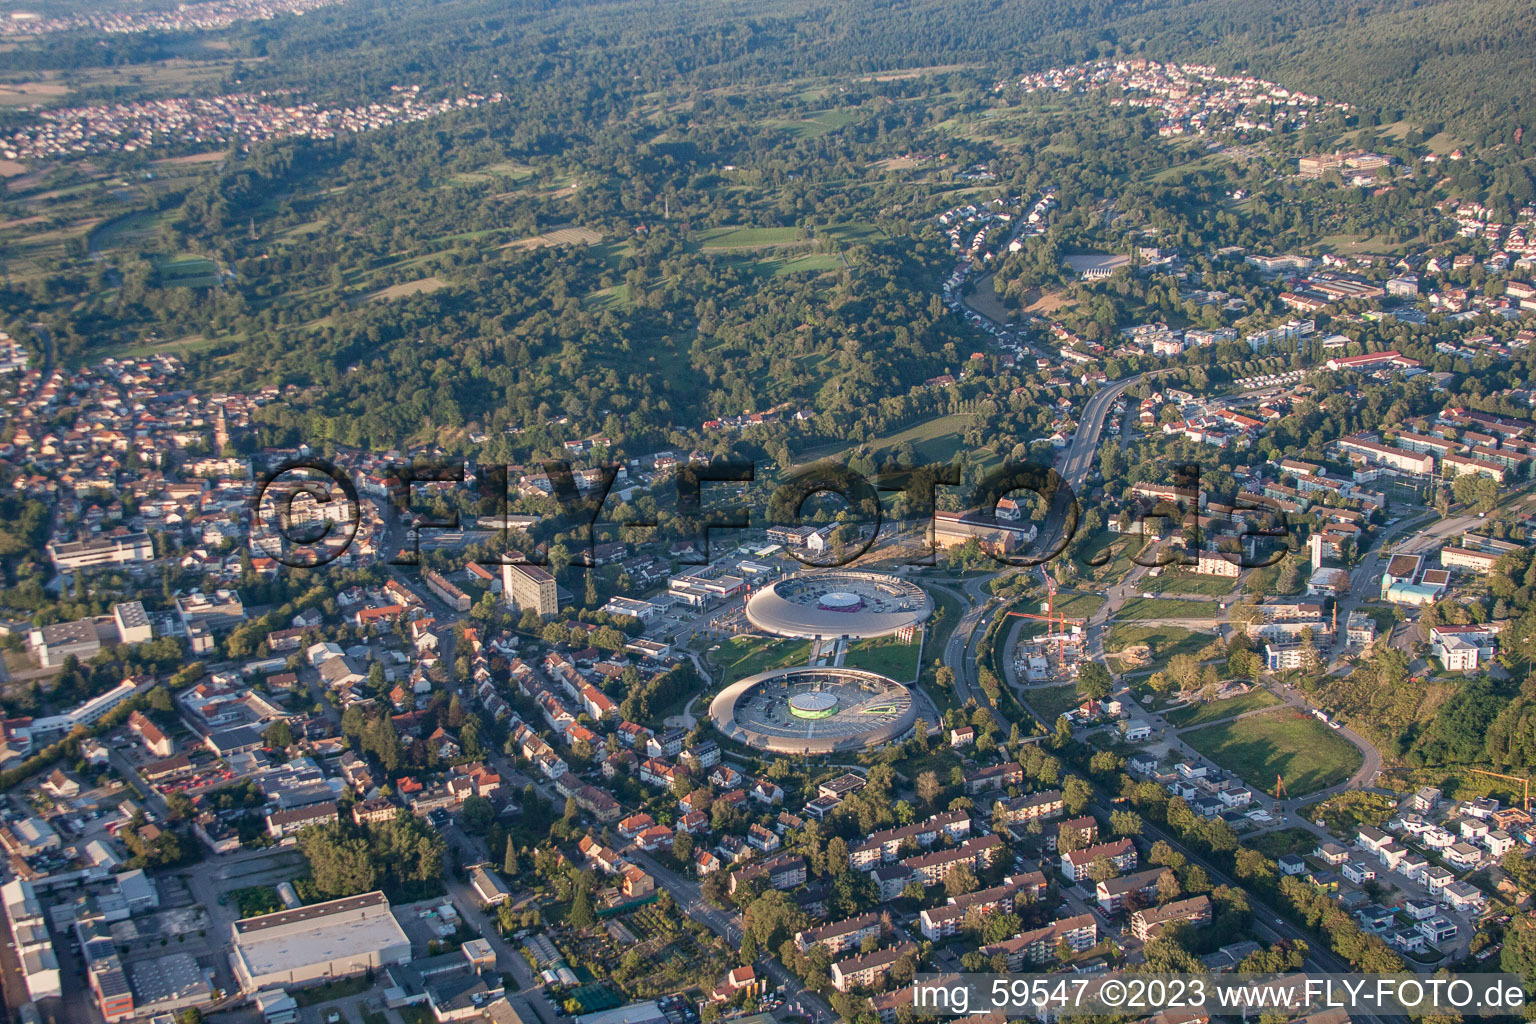 Vue aérienne de Cité commerçante du sud-ouest à le quartier Oos in Baden-Baden dans le département Bade-Wurtemberg, Allemagne